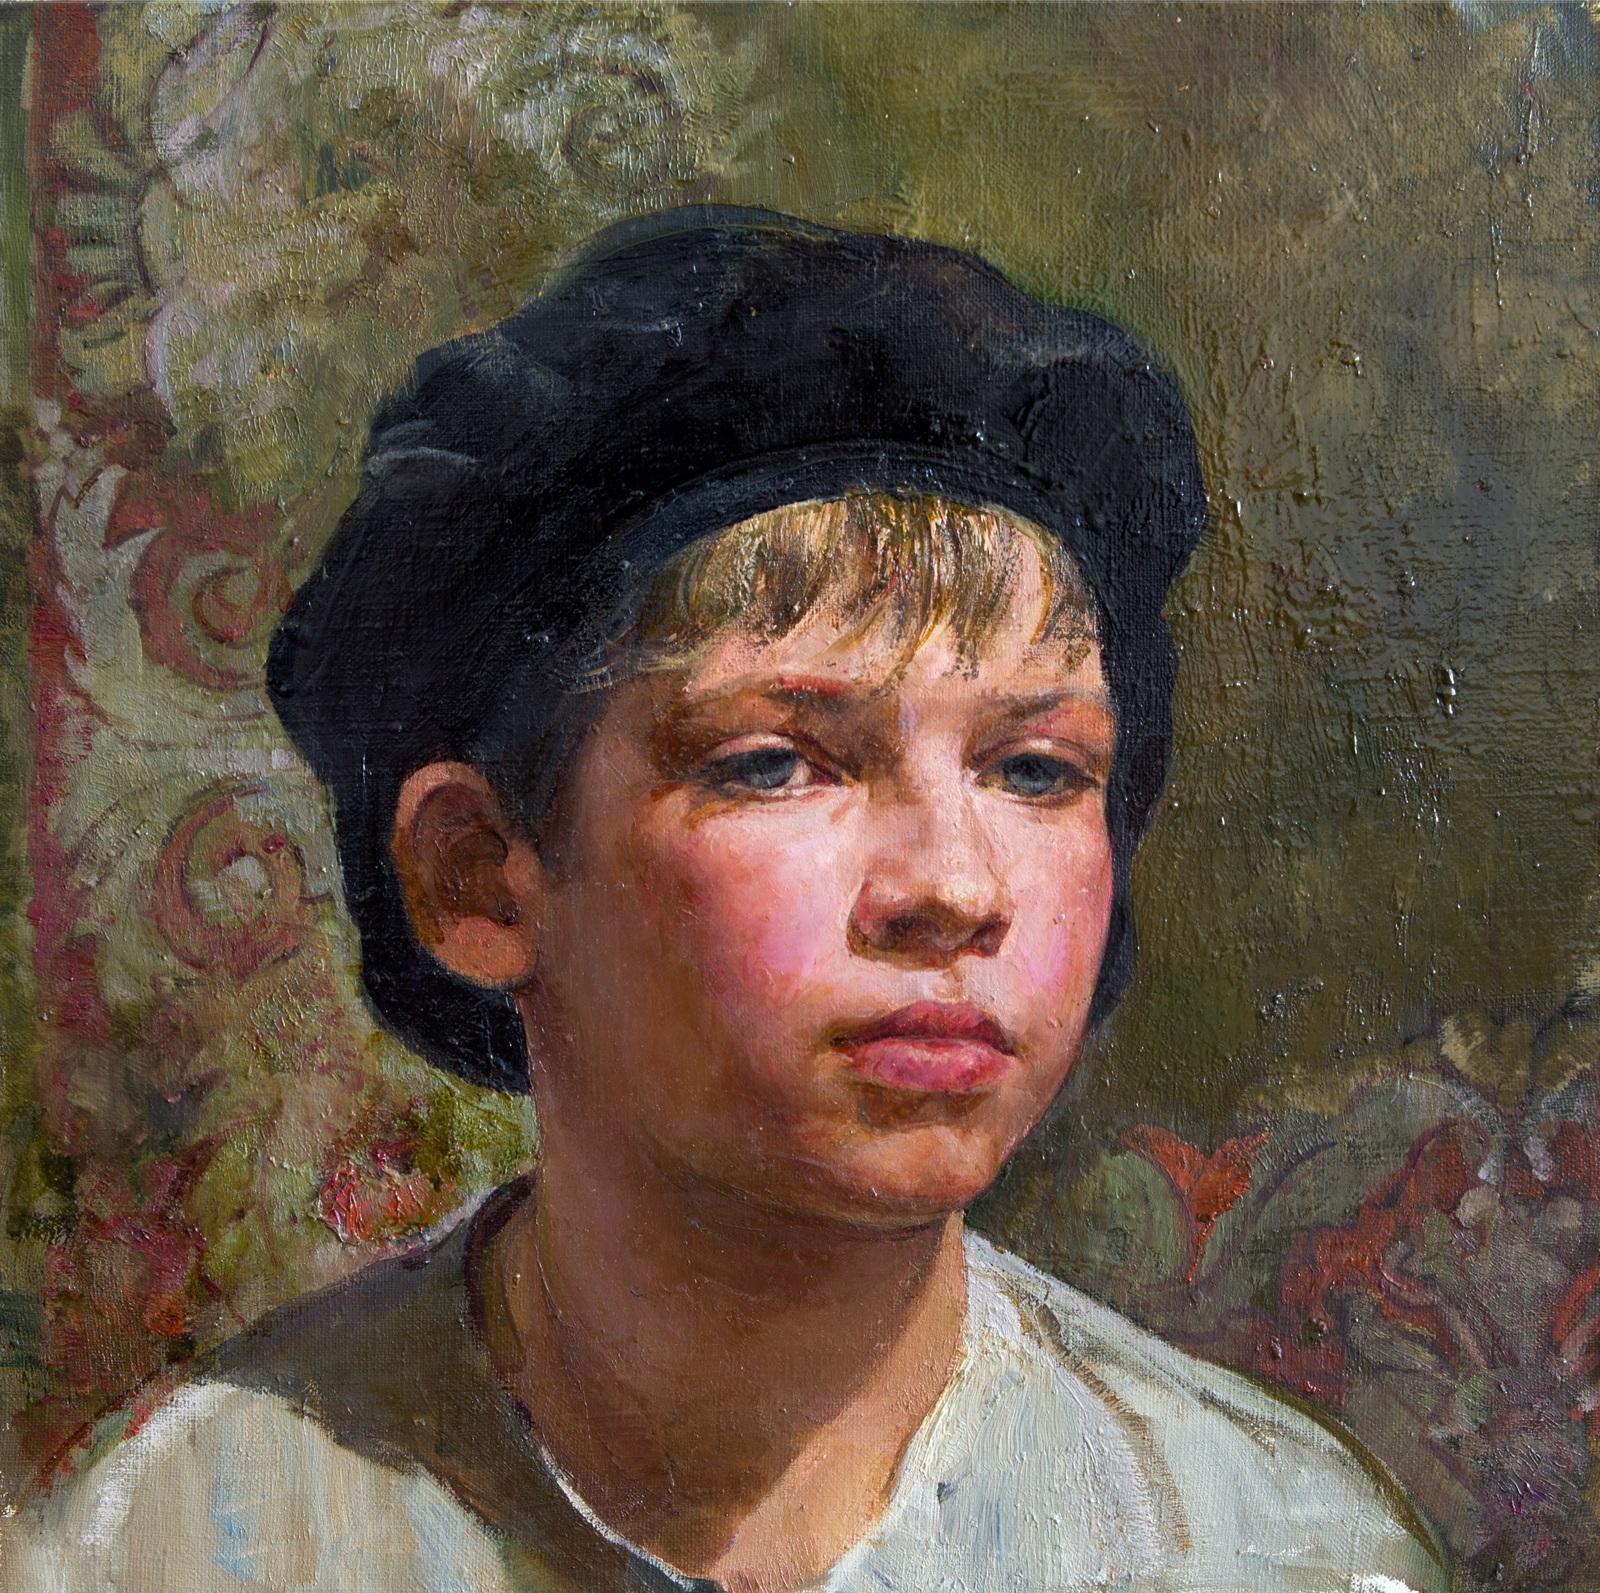 A boy in folk dress. Original modern art painting